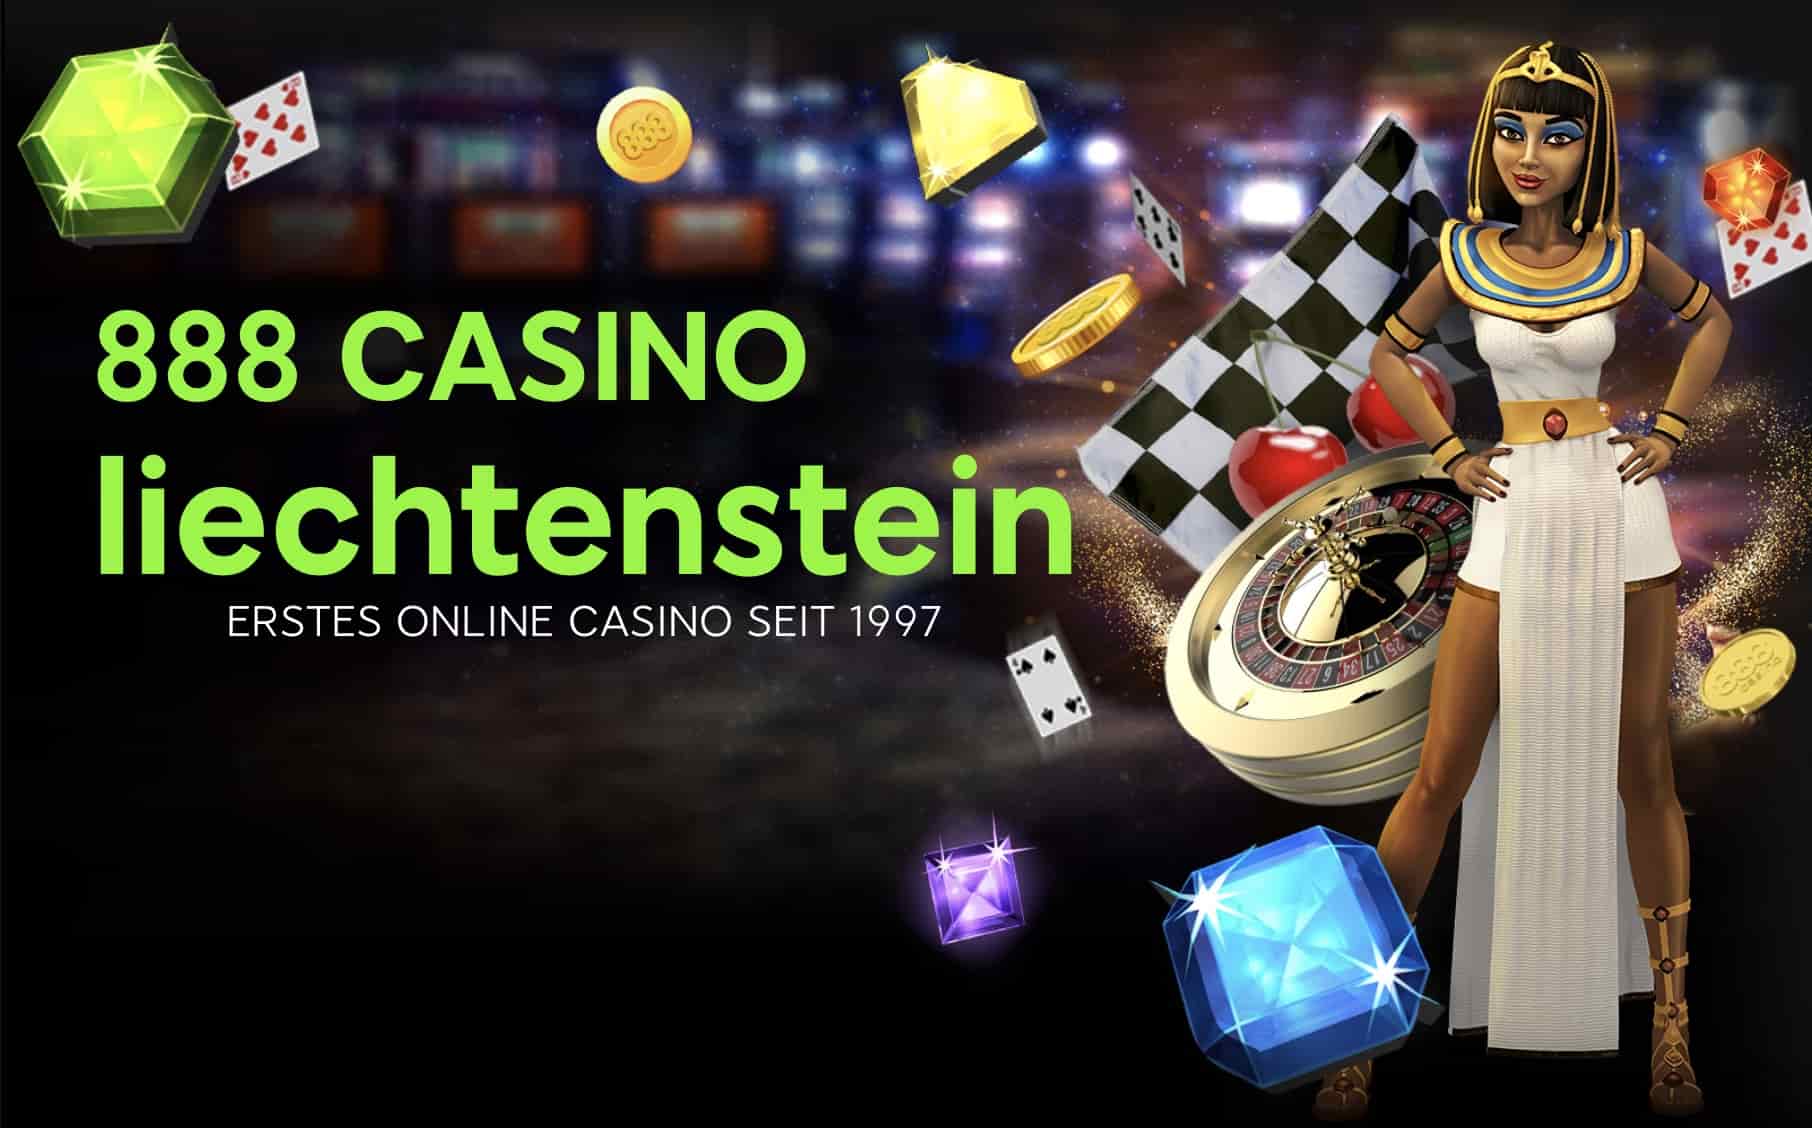 888 Casino Liechtenstein